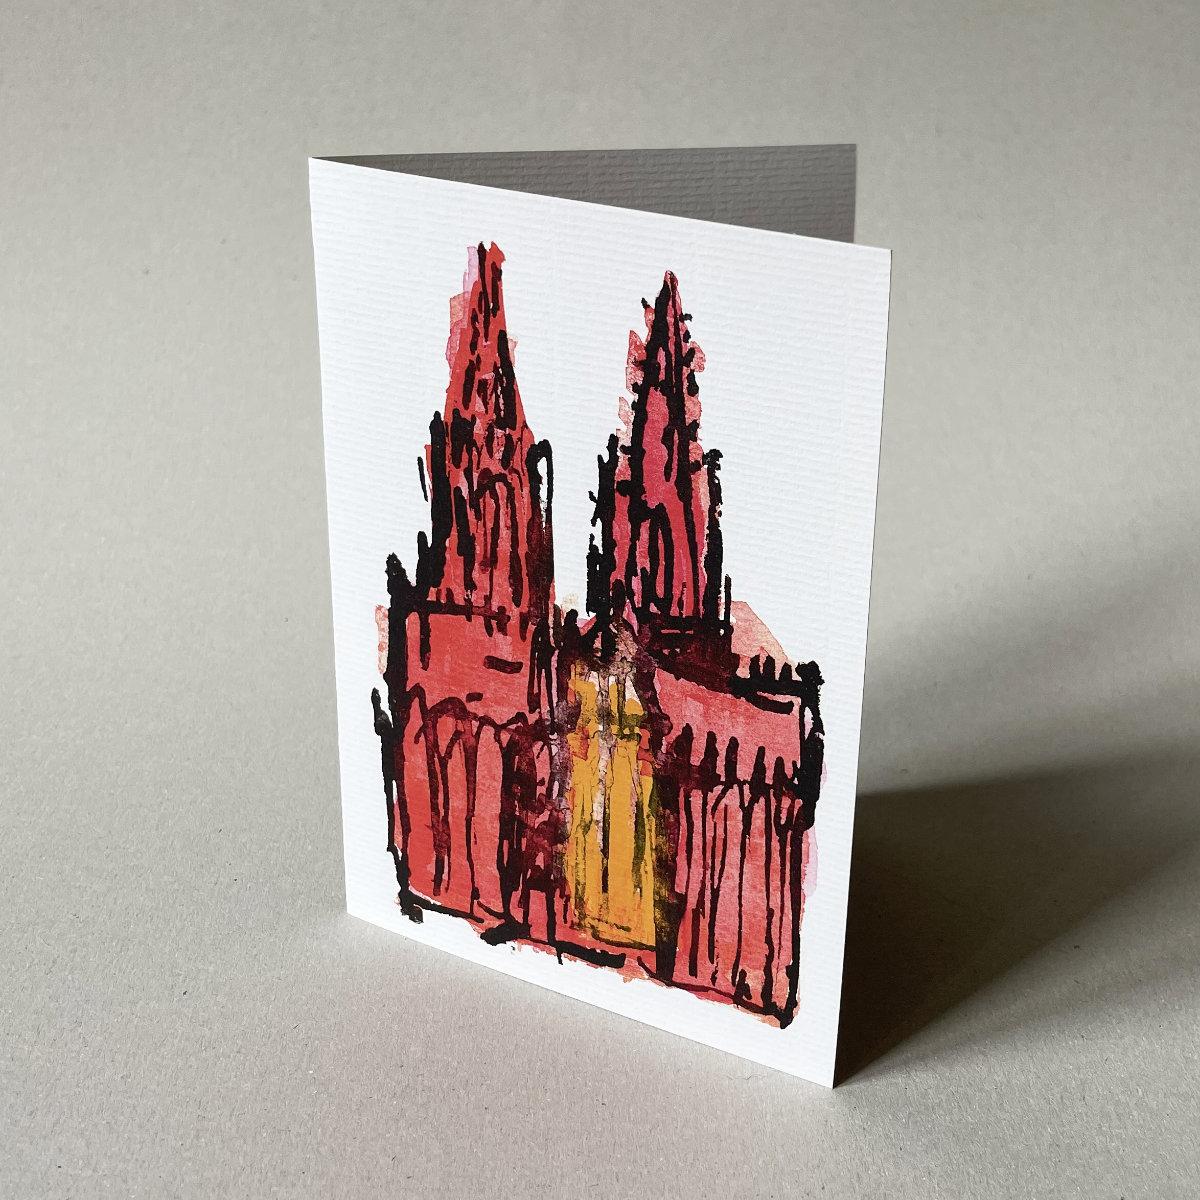 10 Grußkarten mit Umschlägen: Kölner Dom